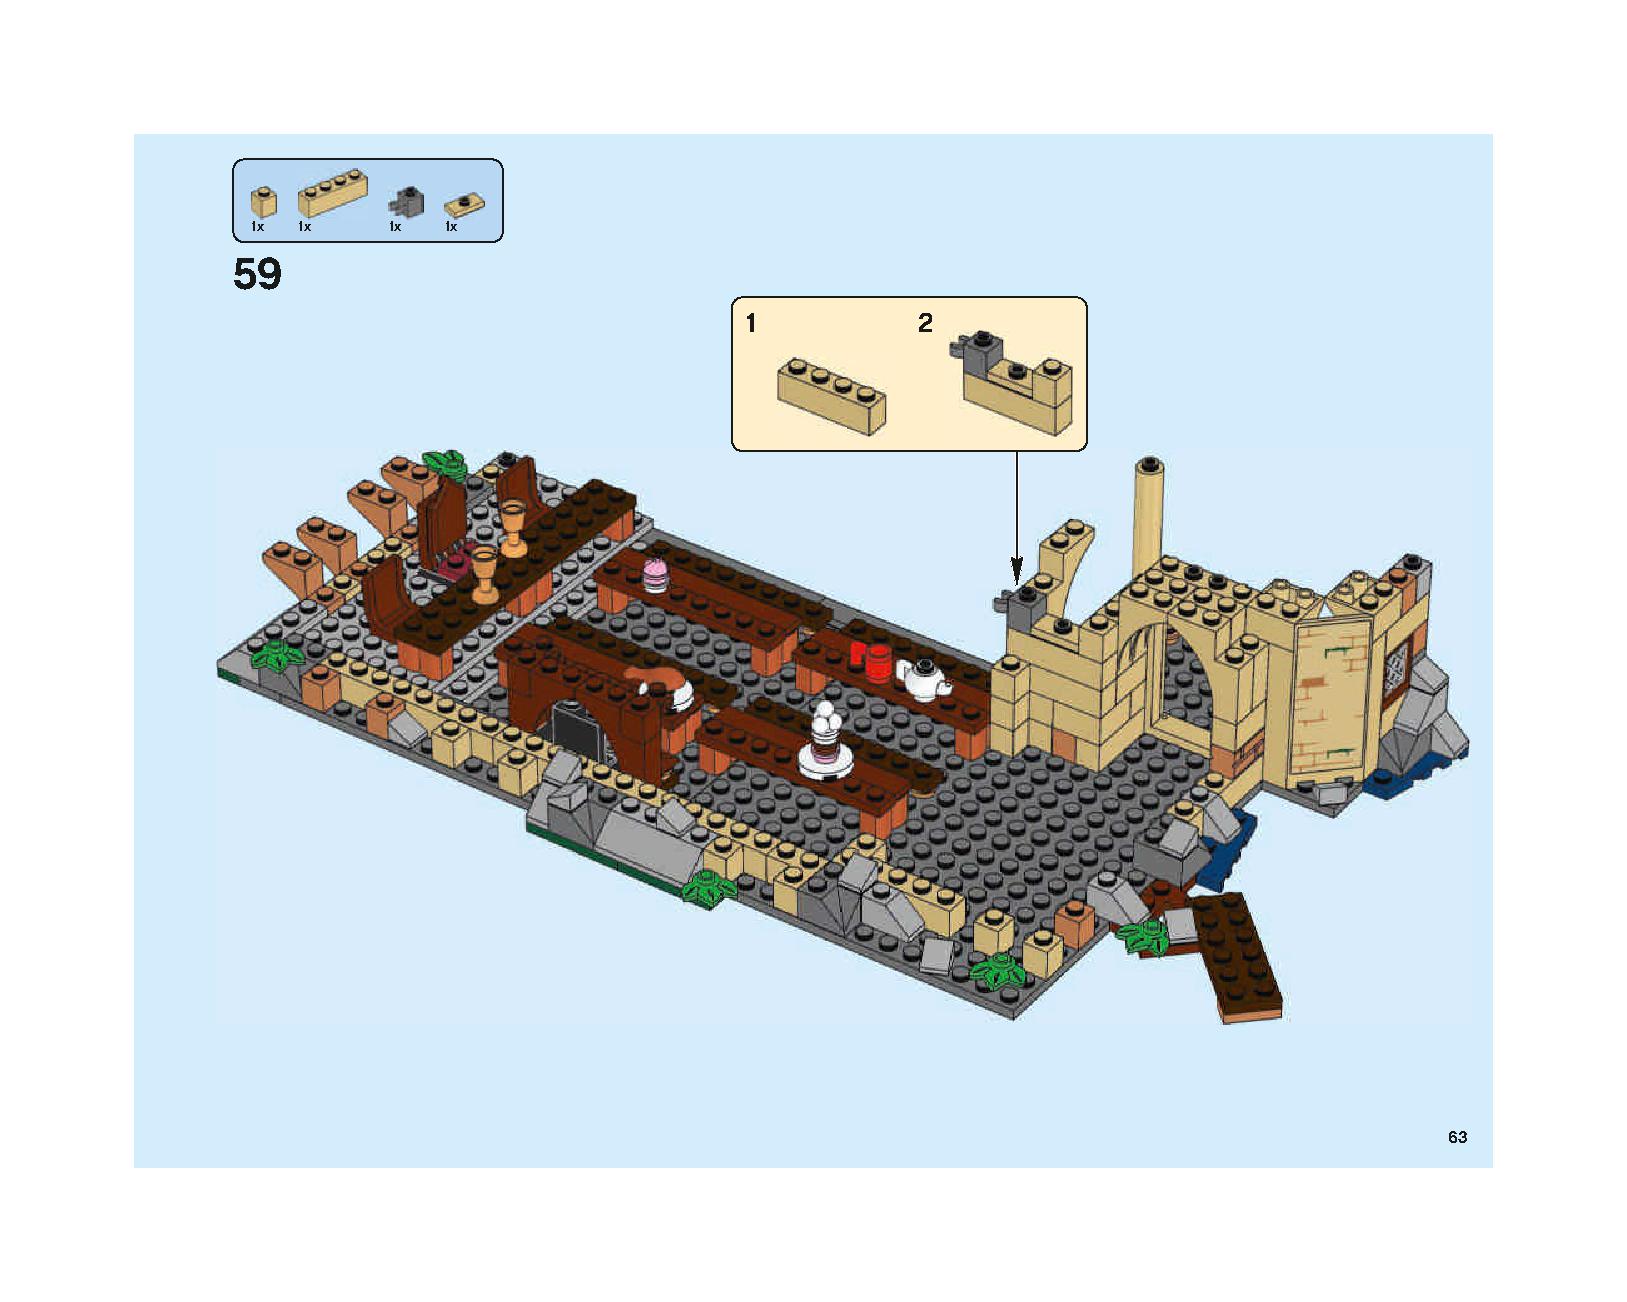 ホグワーツの大広間 75954 レゴの商品情報 レゴの説明書・組立方法 63 page